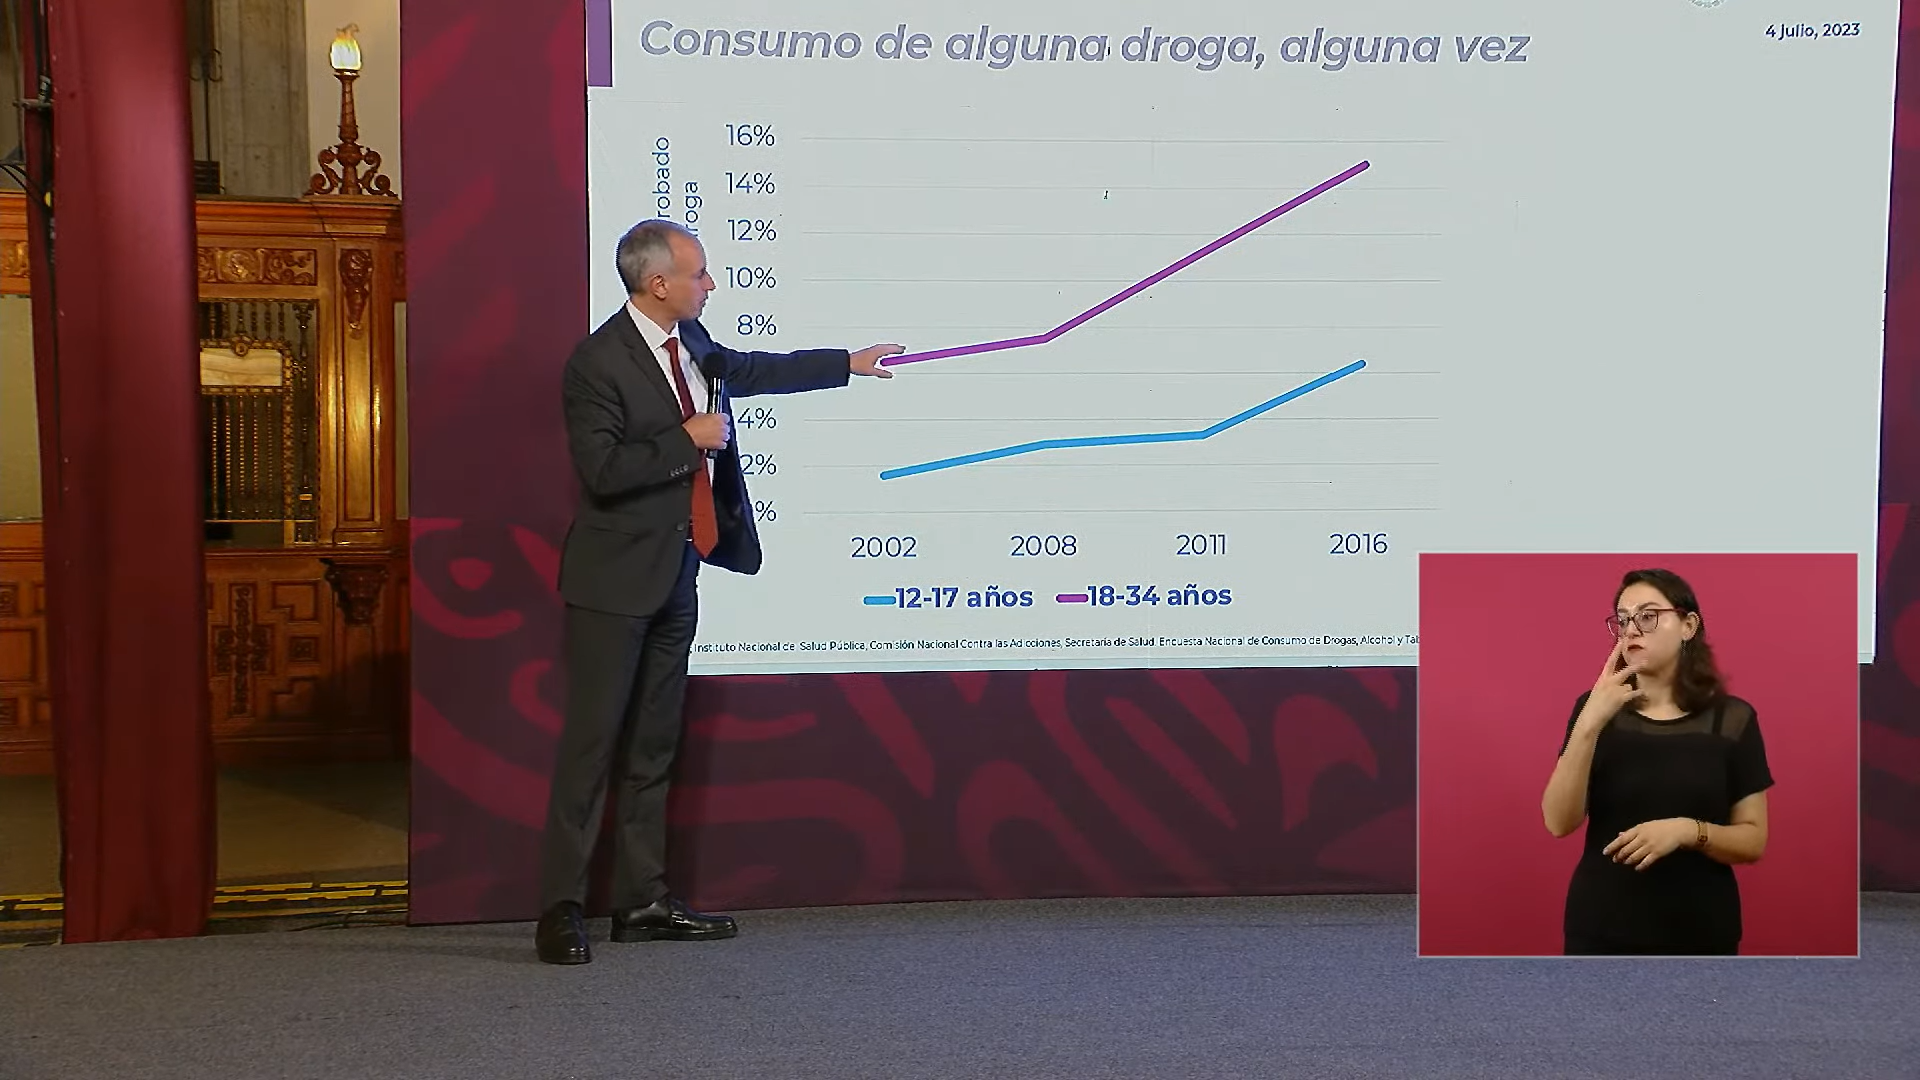 Repuntó en los últimos años del número de consumidores de drogas en México